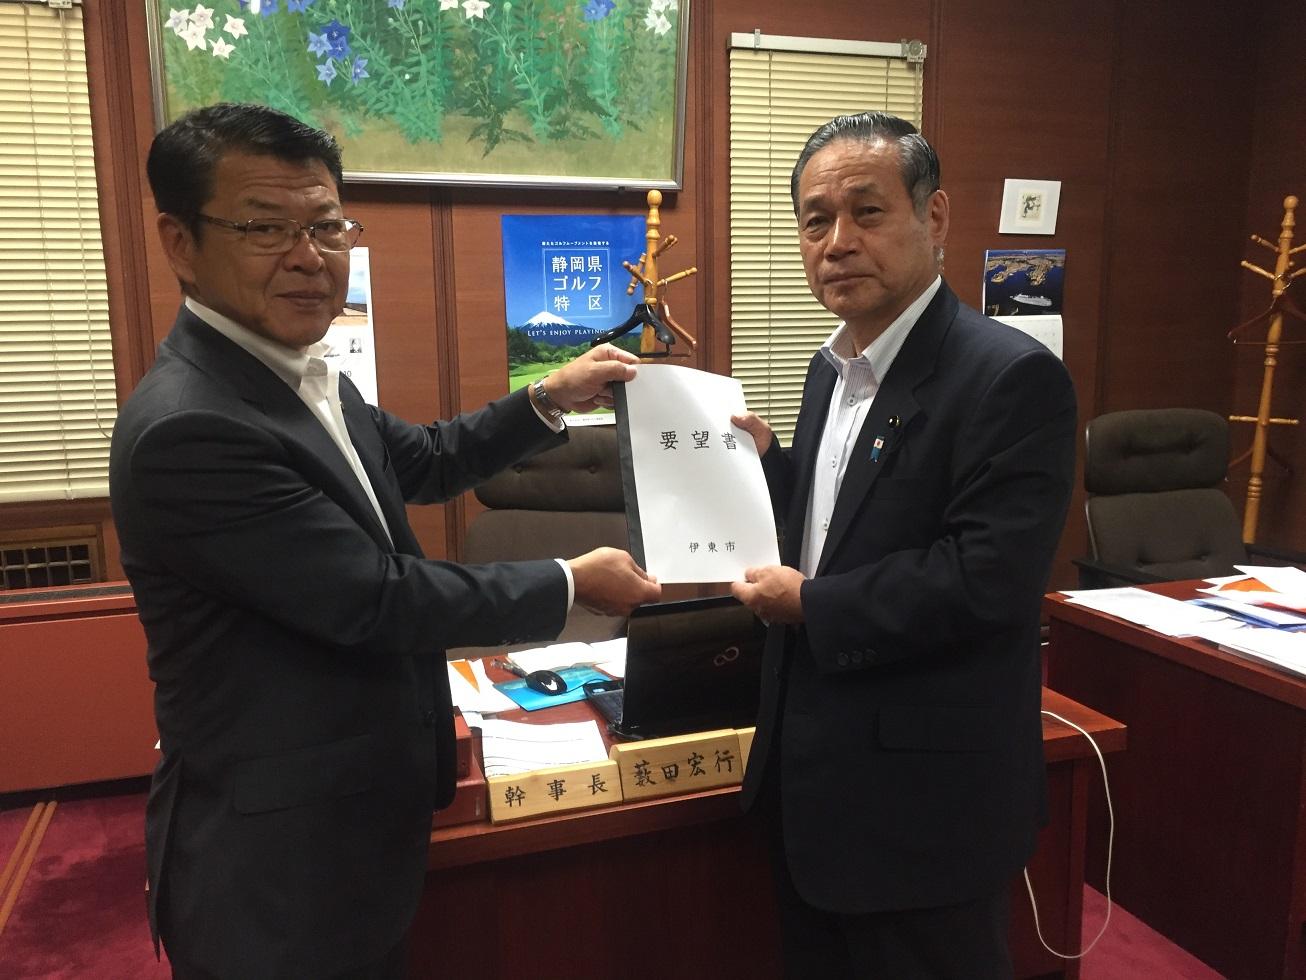 2018年9月4日 伊東市からの要望書を手渡しする伊東市長と受け取る薮田幹事長の写真